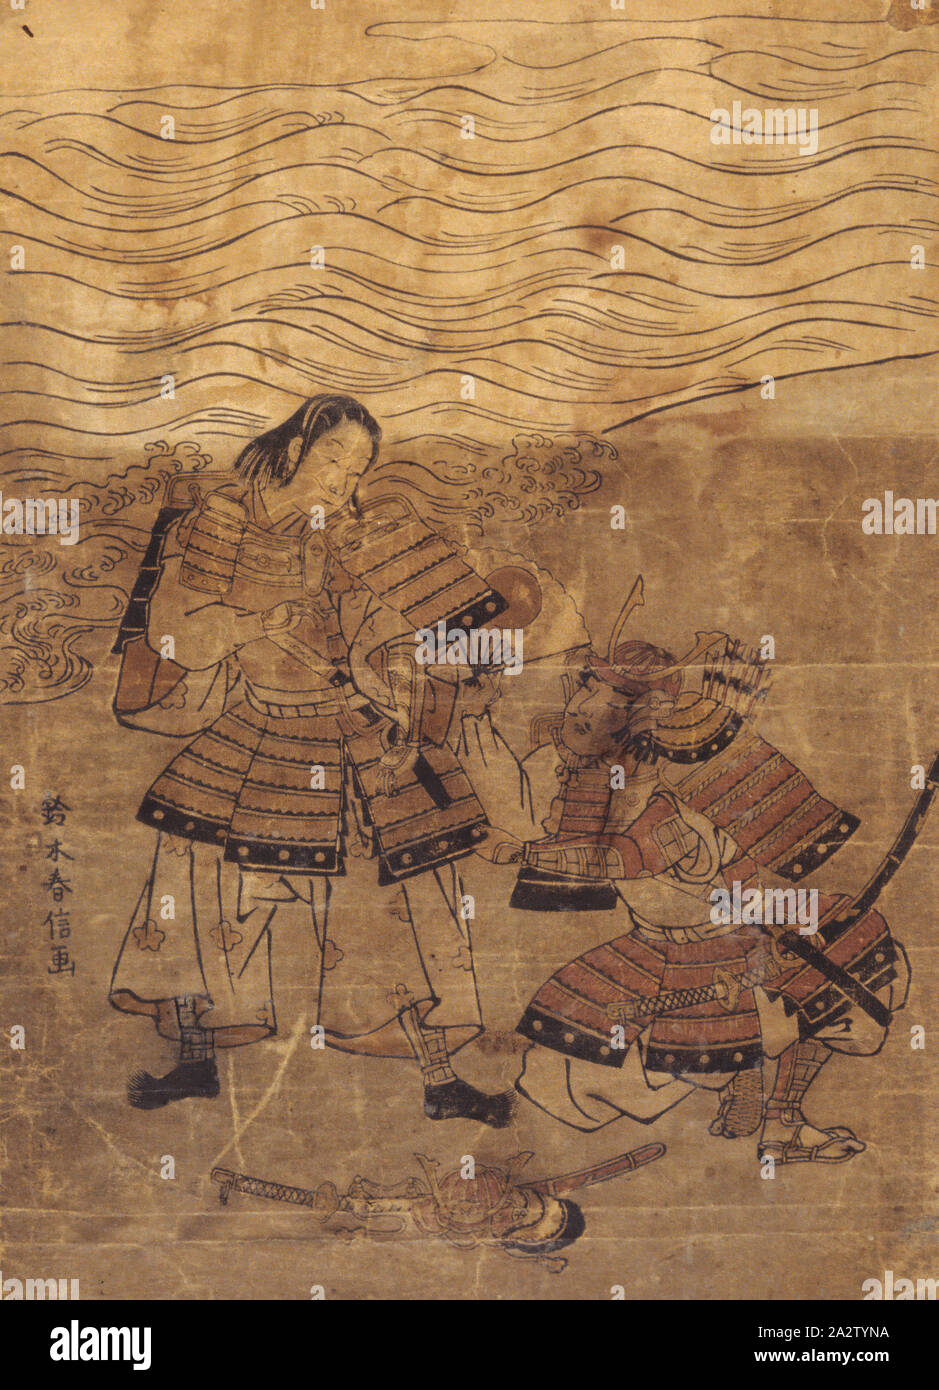 Zwei Krieger am Ufer, Suzuki Harunobu (Japanisch, 1724-1770), Edo, über 1760, Tinte auf Papier, Farbe, Holzschnitt, 11-7/8 x 7-7/8 in. (Bild & Blatt), vom Künstler signiert, l l m.: Suzuki Harunobu ga, Asiatische Kunst Stockfoto